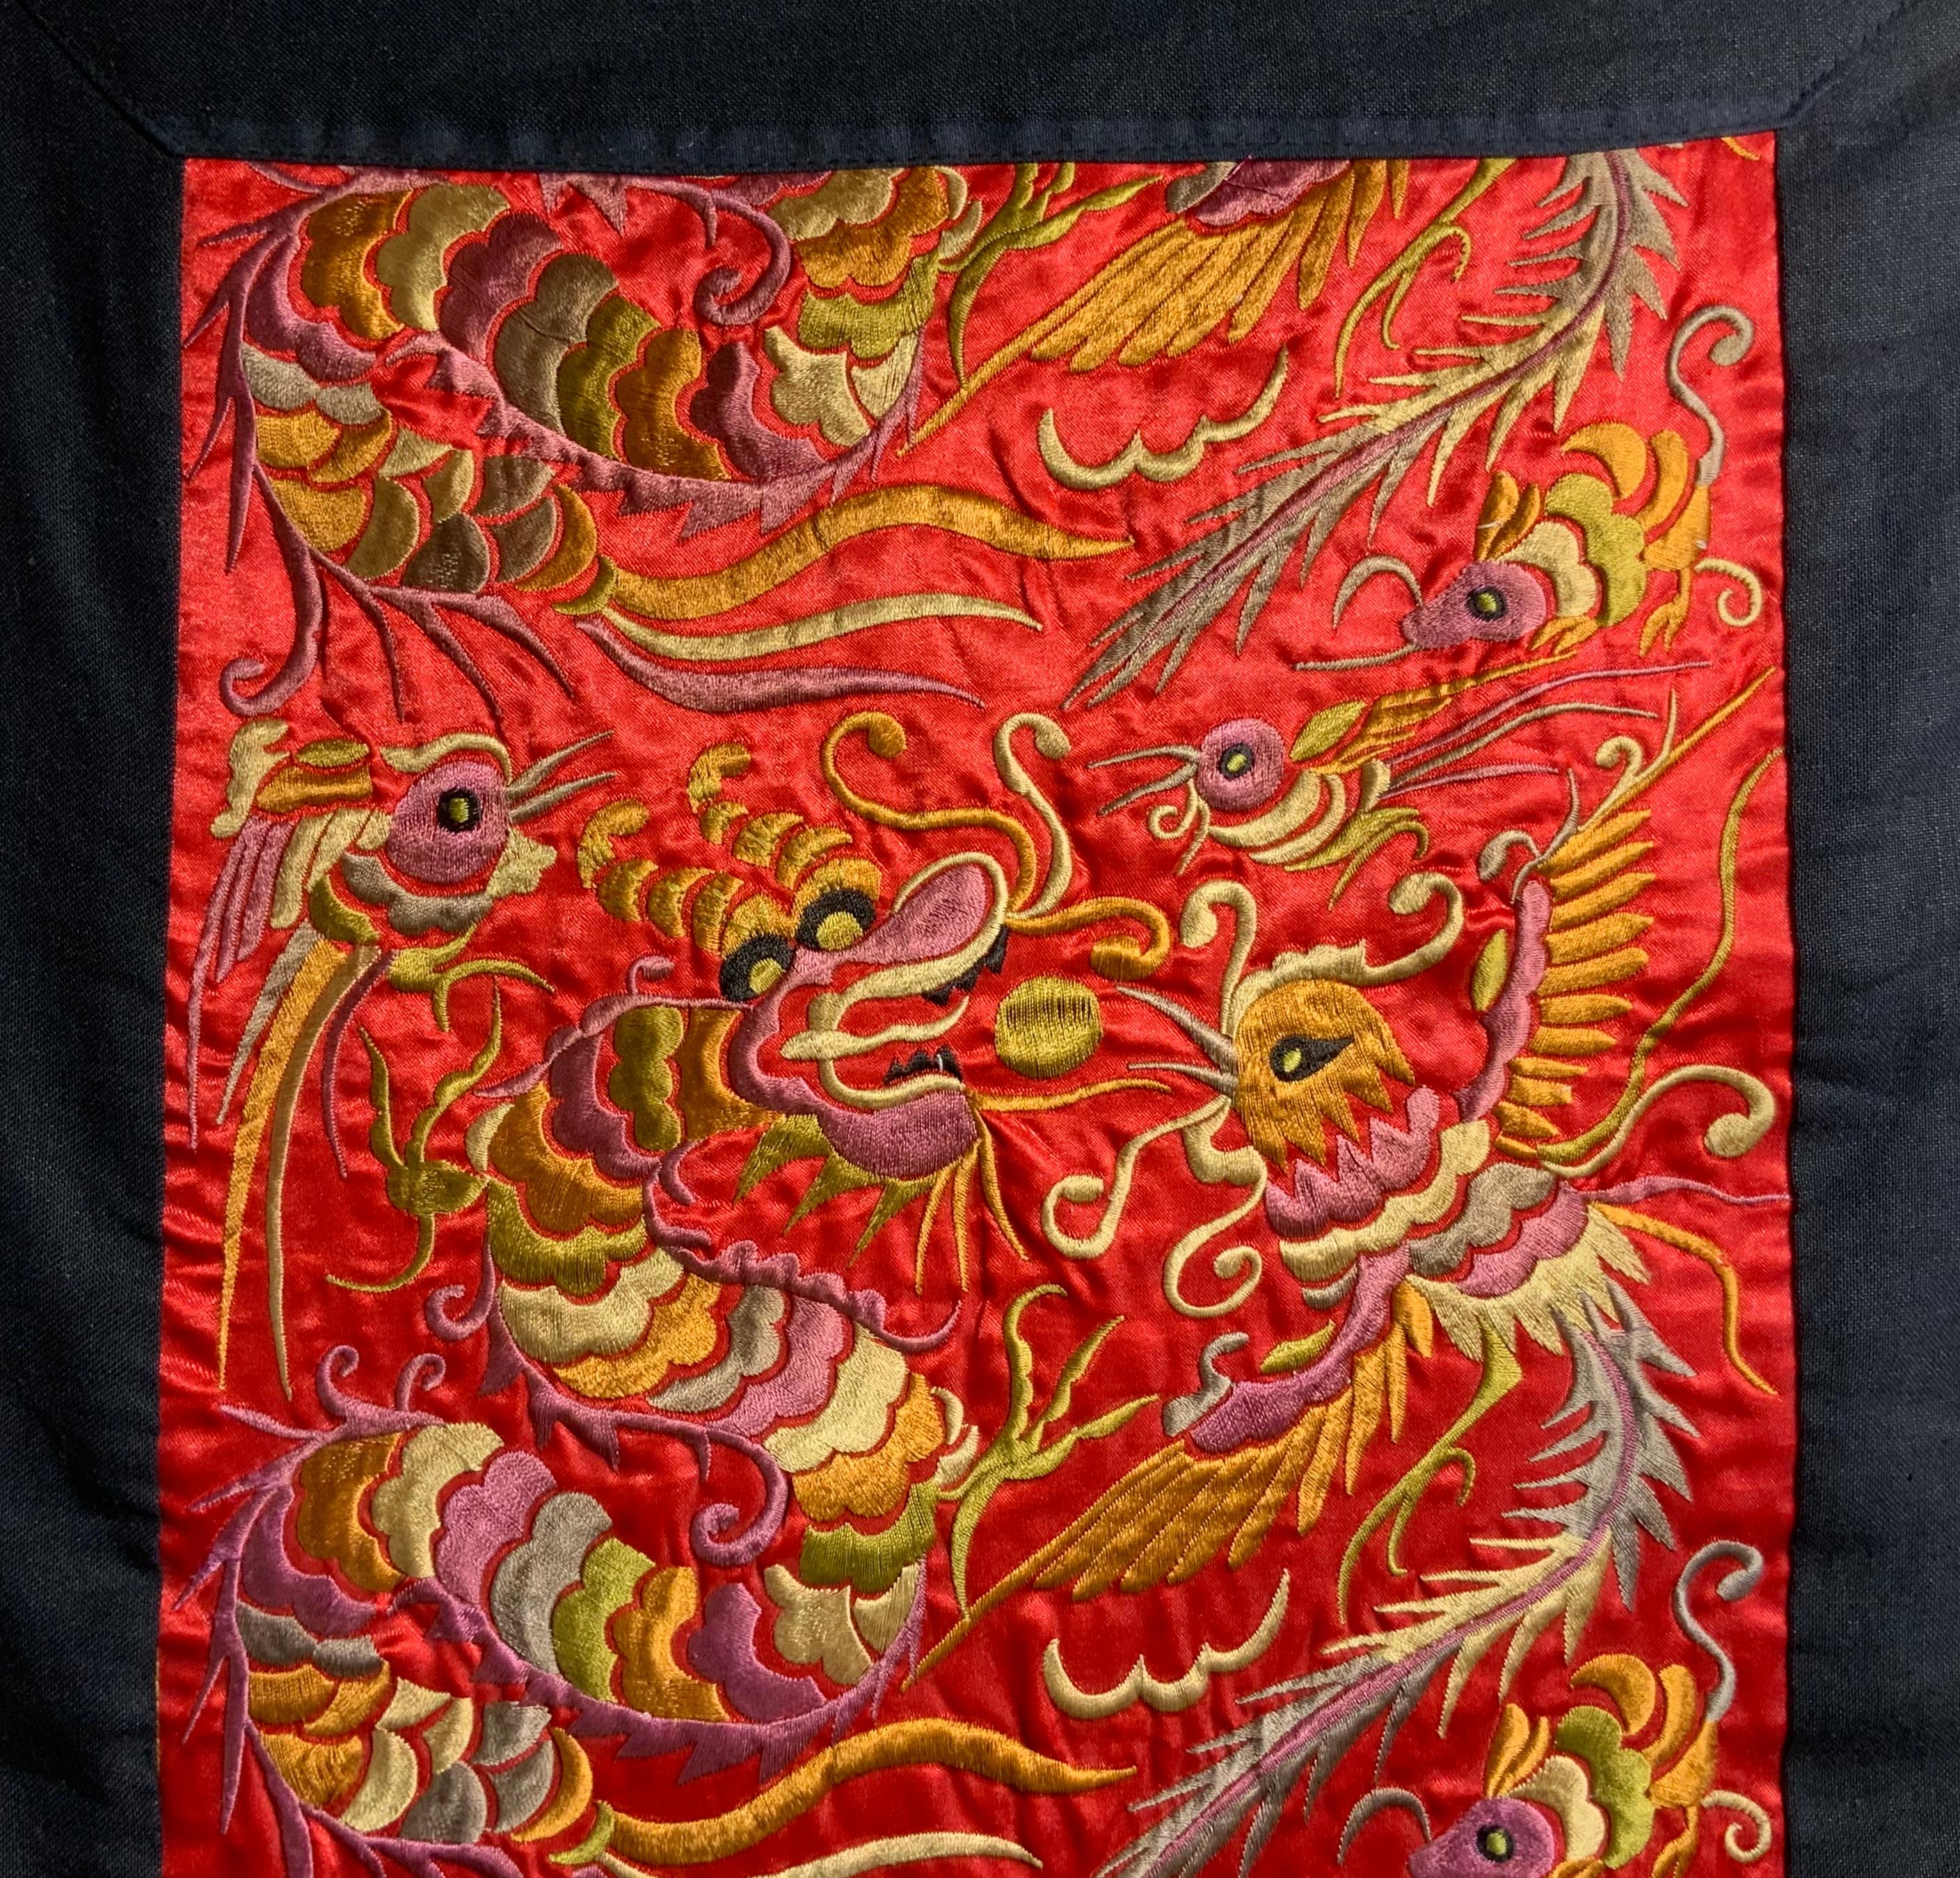 Il s'agit d'une incroyable tenture murale en satin de soie brodé. Pièce ancienne de Chine, les motifs traditionnels montrent des scènes répétées de dragons et d'oiseaux dans des détails parfaits dans des soies polychromes. La broderie à la main est